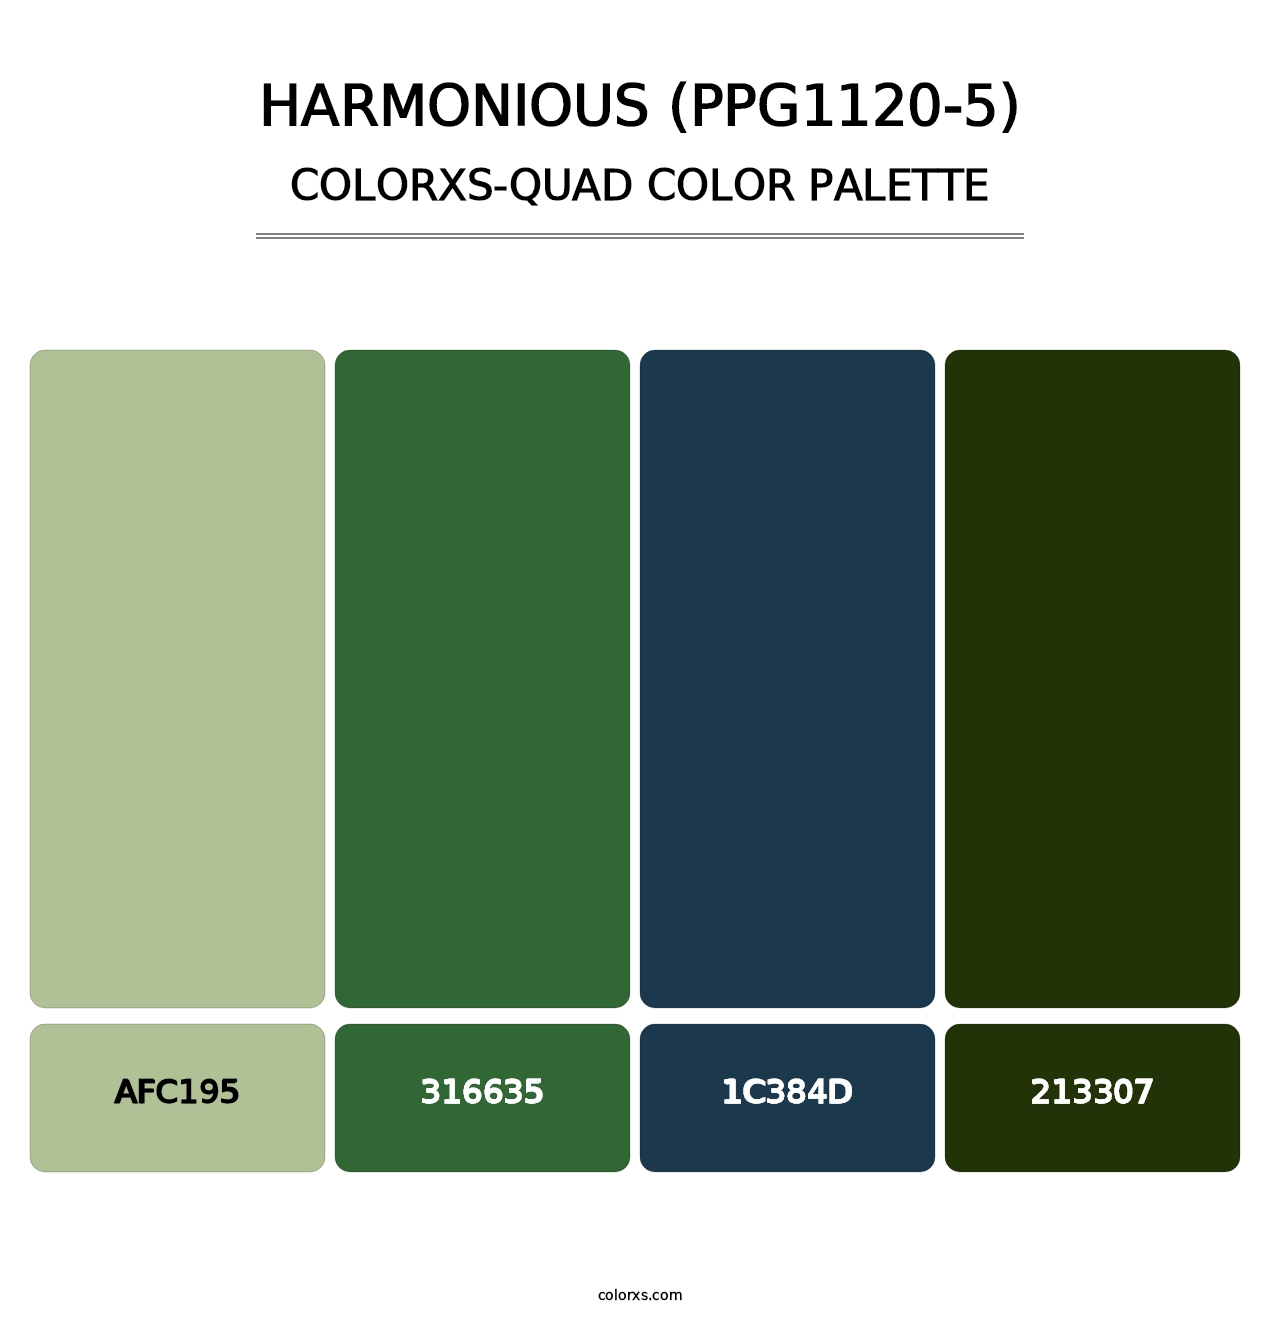 Harmonious (PPG1120-5) - Colorxs Quad Palette